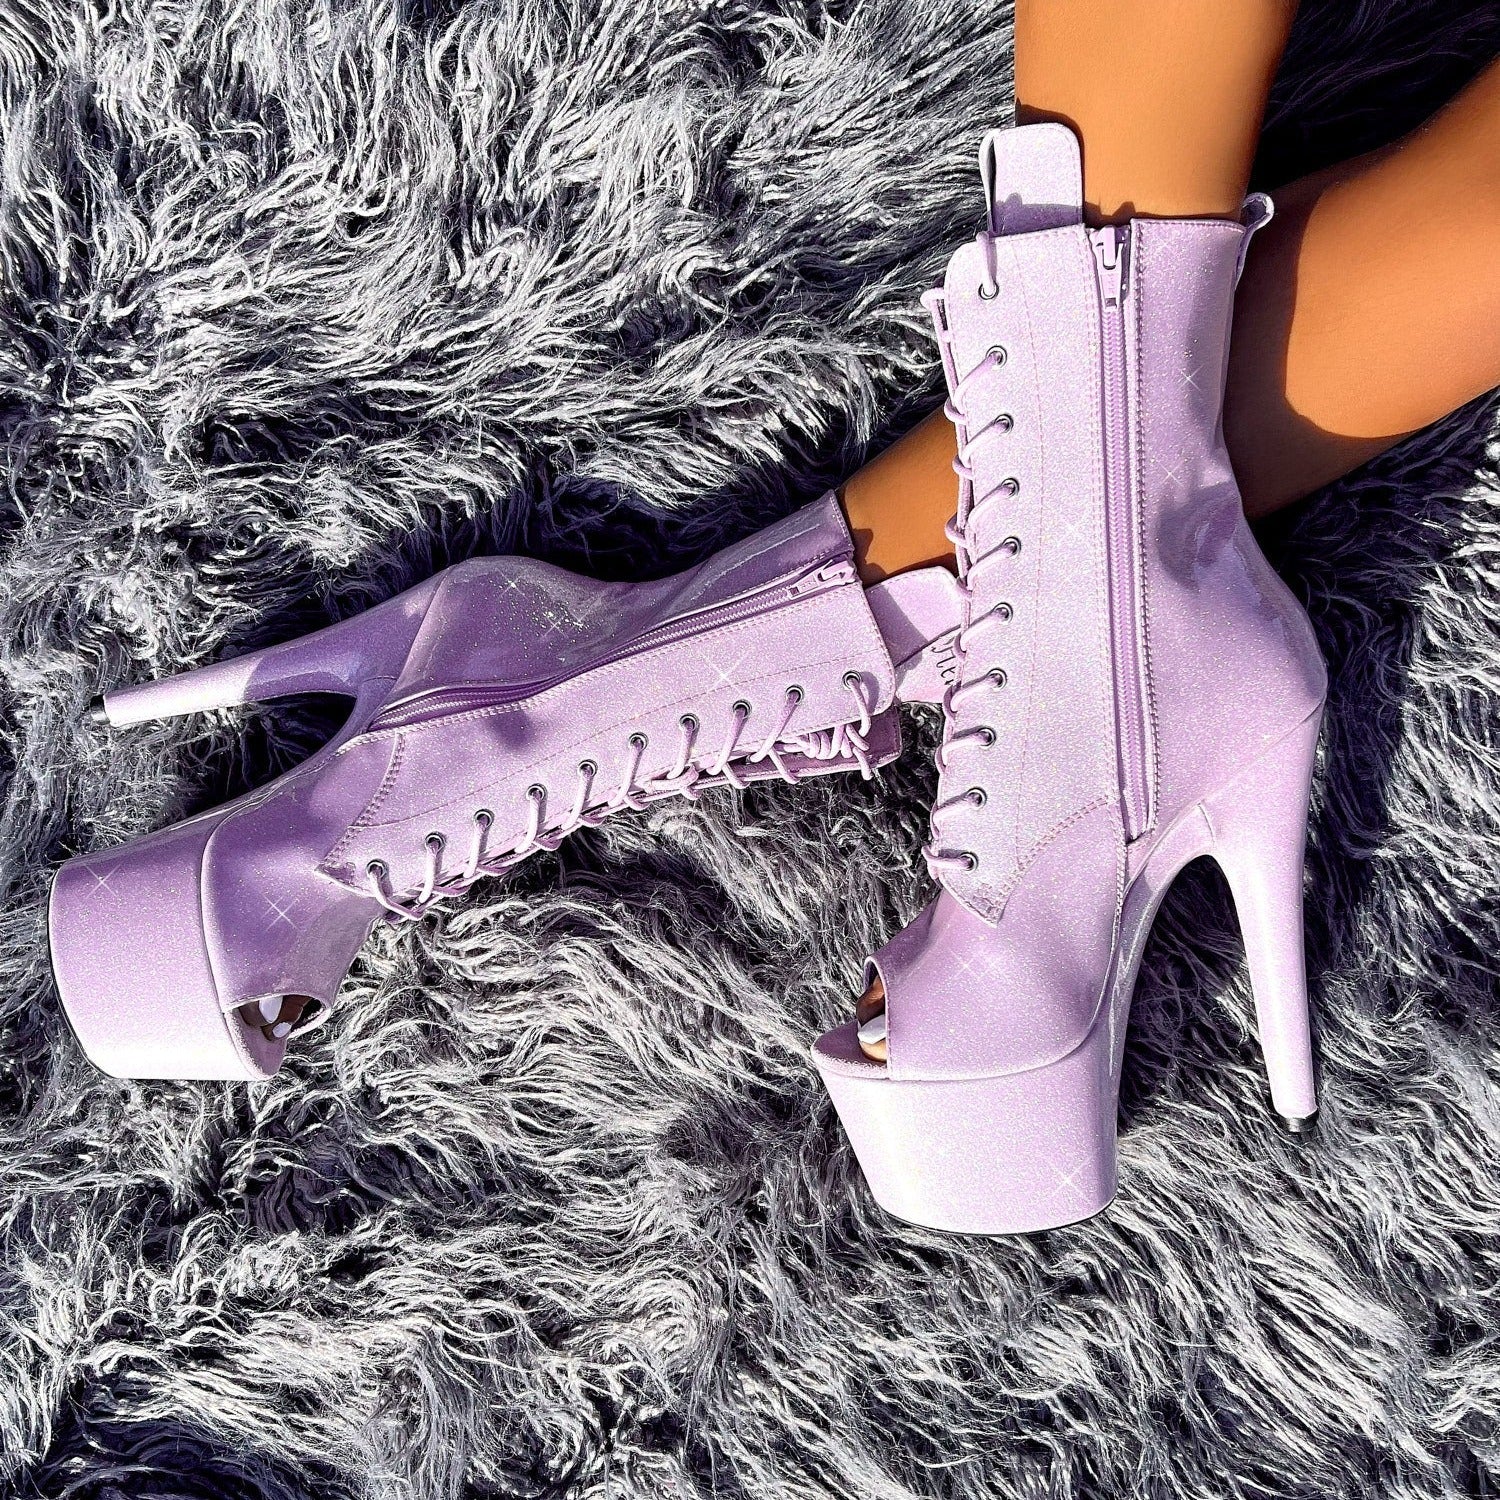 The Glitterati Open Toe Boot - Lilac Lovers - 7 INCH, stripper shoe, stripper heel, pole heel, not a pleaser, platform, dancer, pole dance, floor work